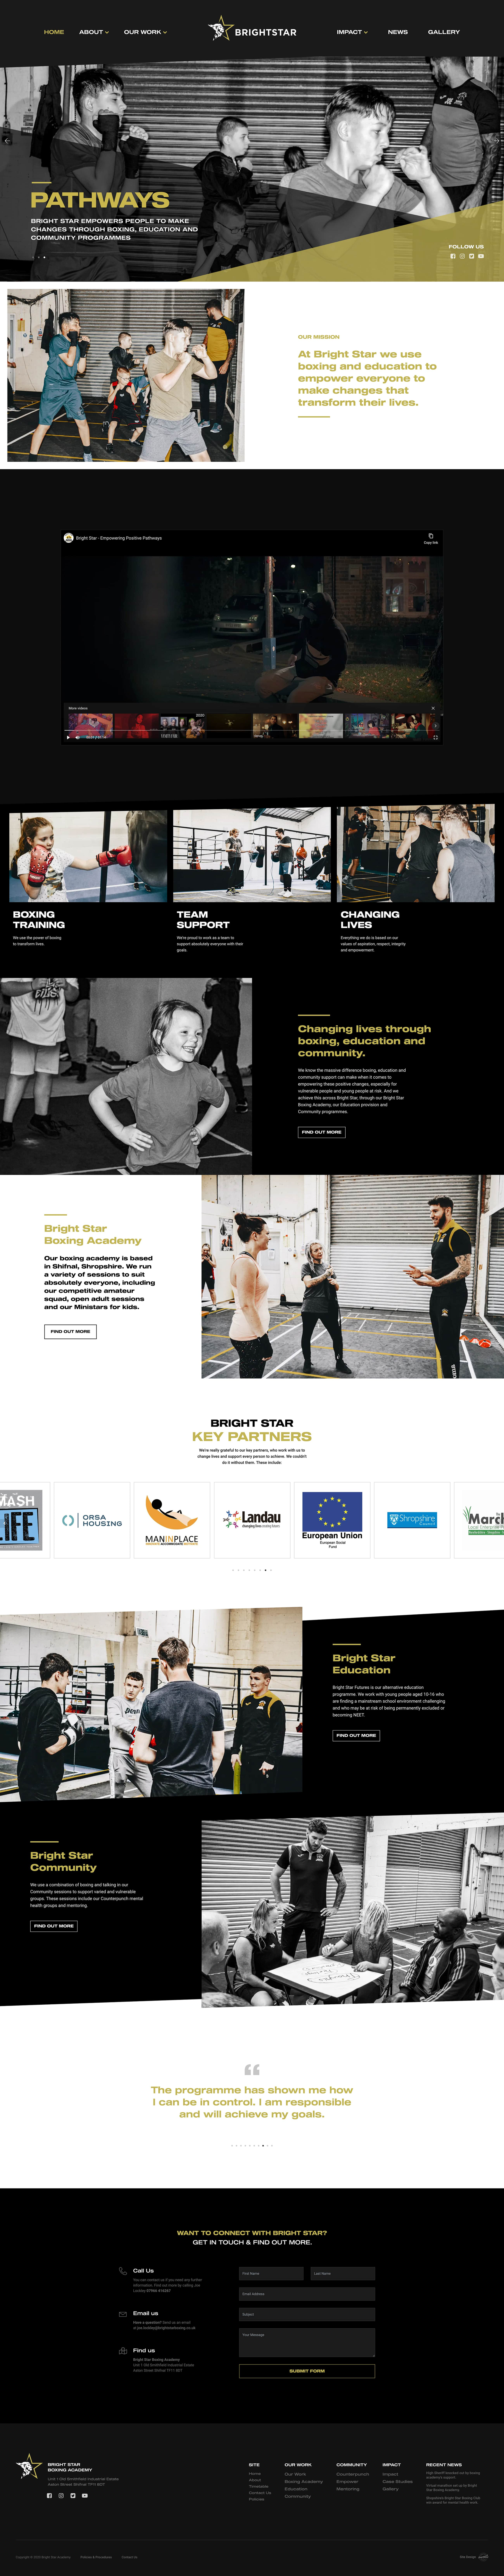 brightstarboxing.co uk website visual design 2020